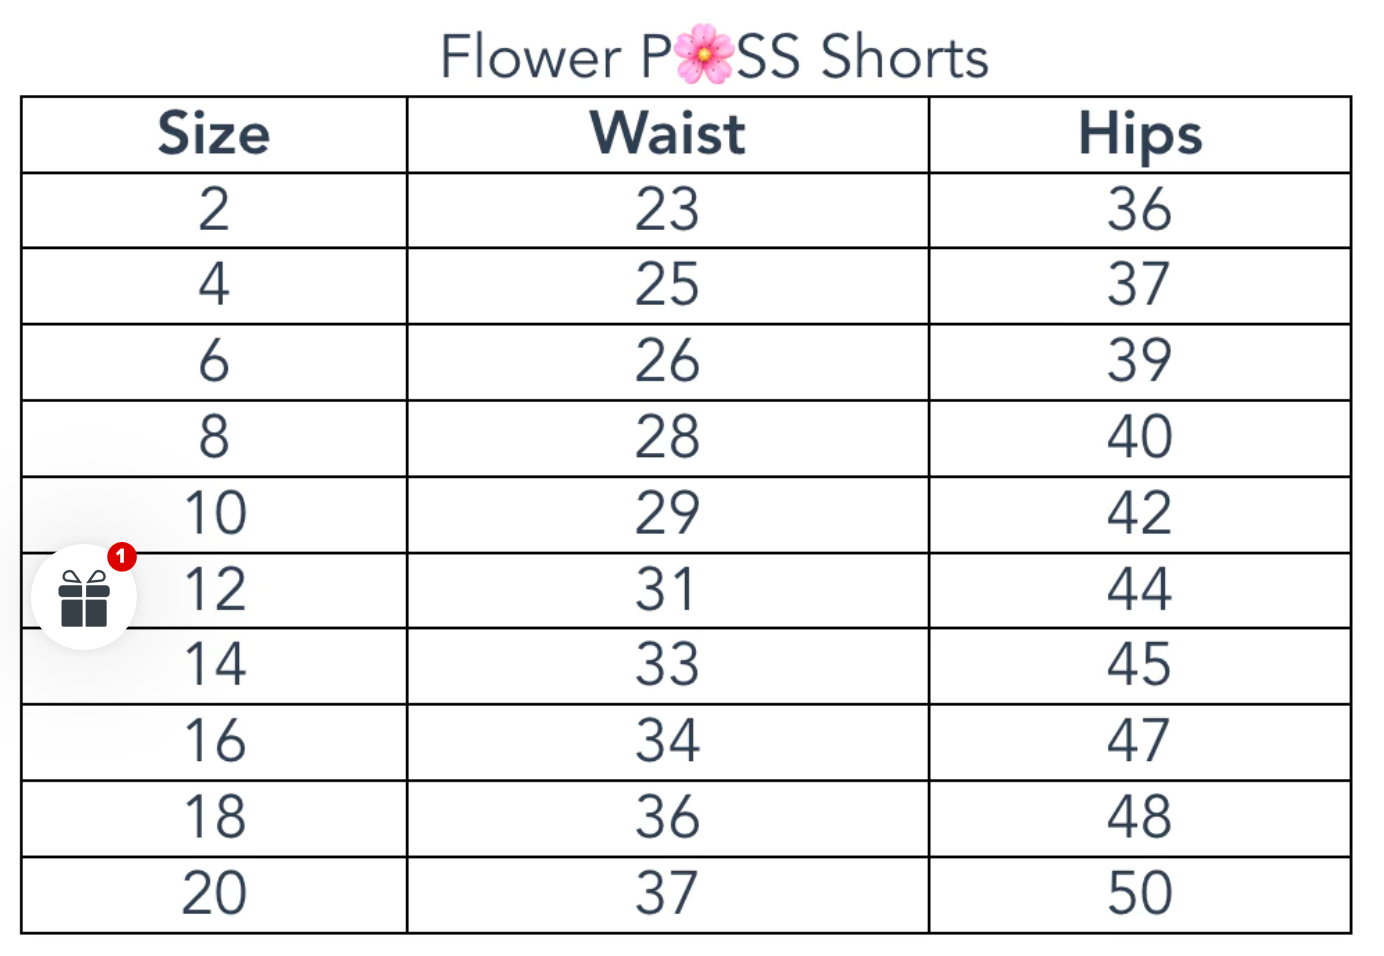 Flower Puss shorts